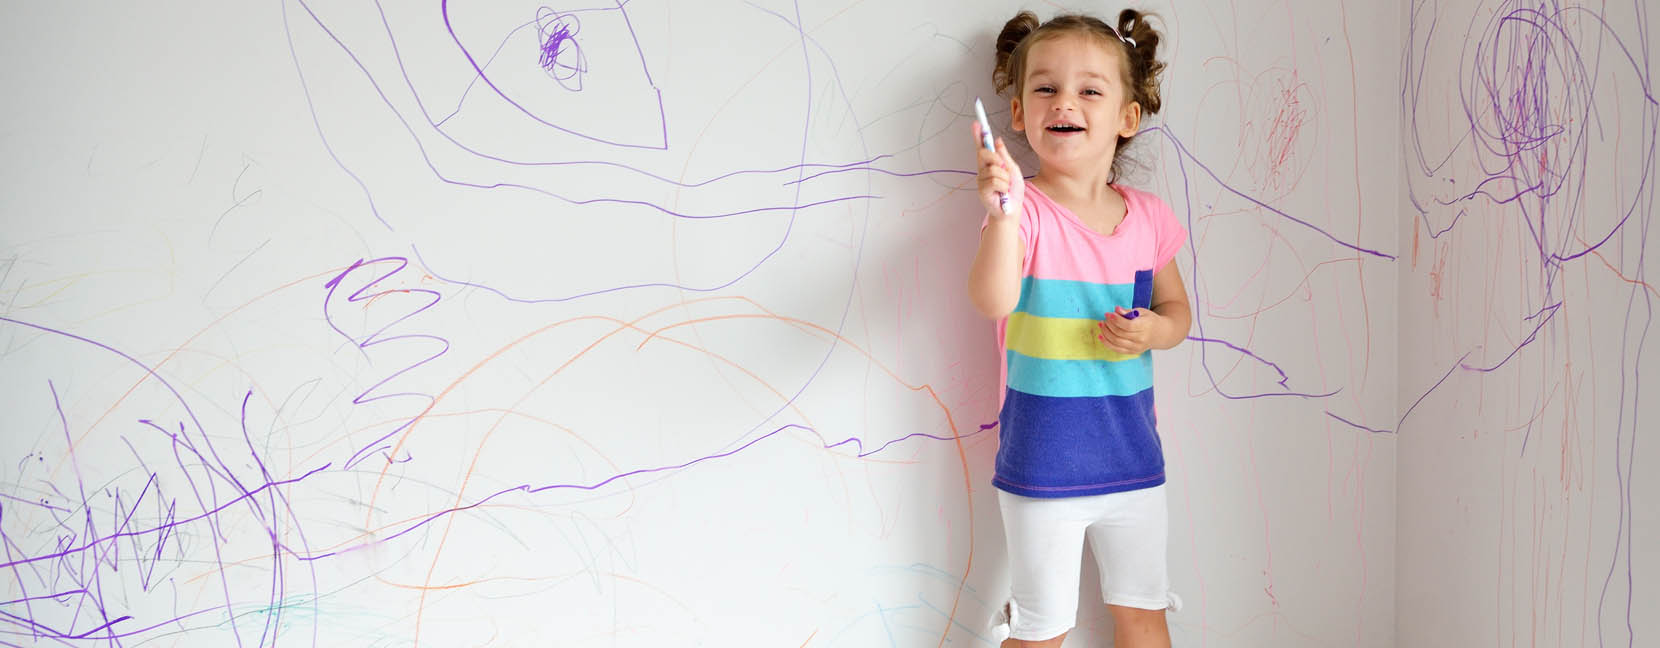 Bambina che ha disegnato con i pennarelli il muro e ride divertita